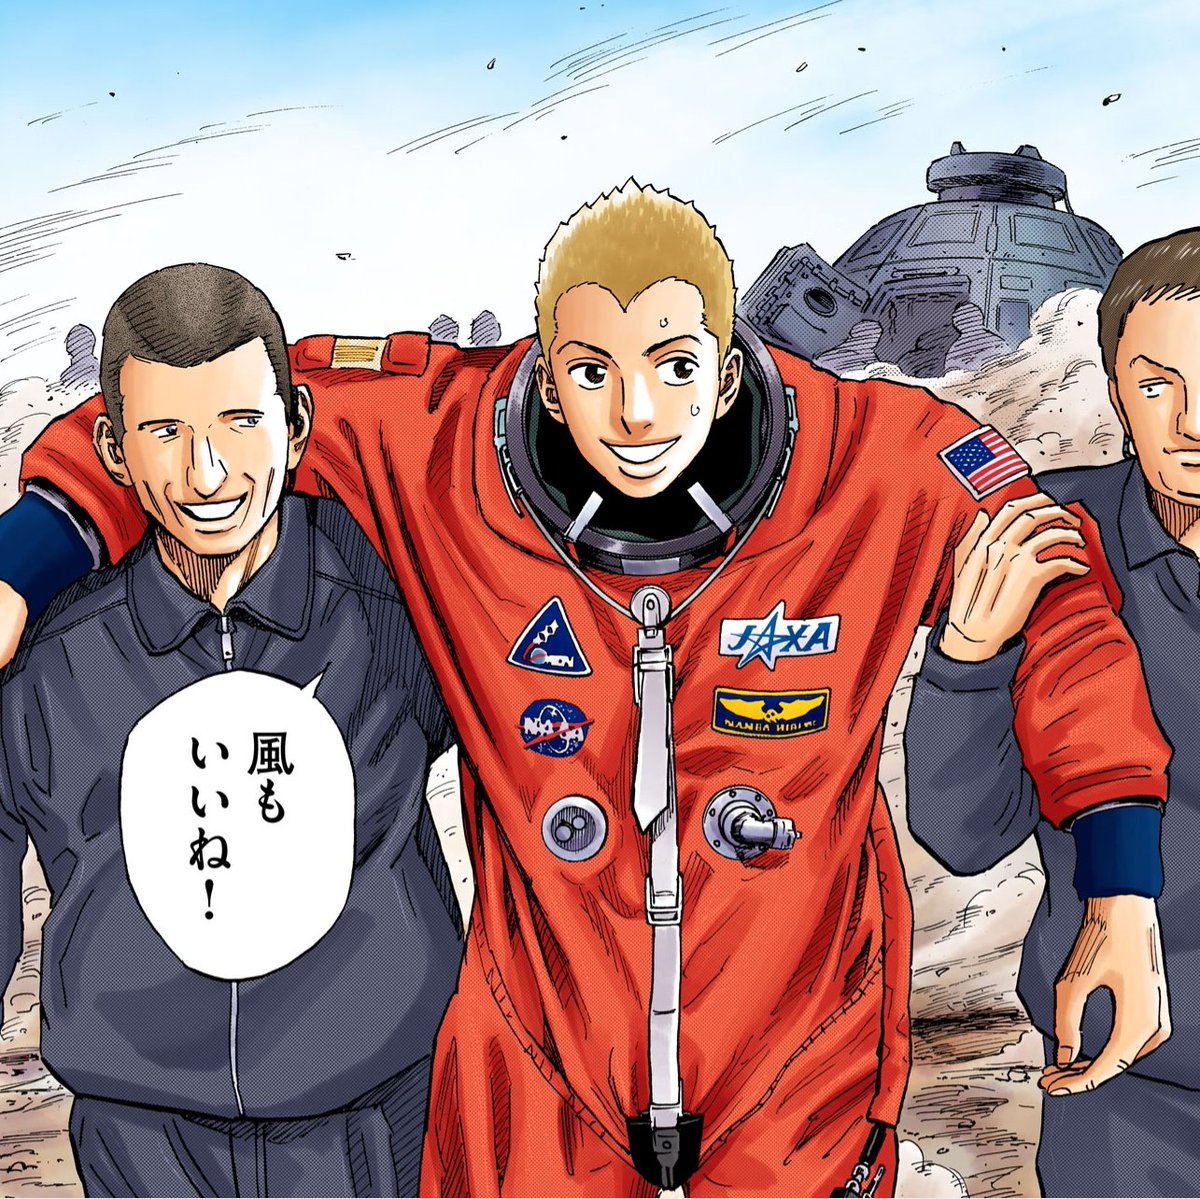 古川宇宙飛行士がカプセルから出てきました！やったー！
おかえりなさい！

地球への帰還おめでとうございます！！🎊

#JAXA  #Crew7
#スペースJAPANを応援しよう